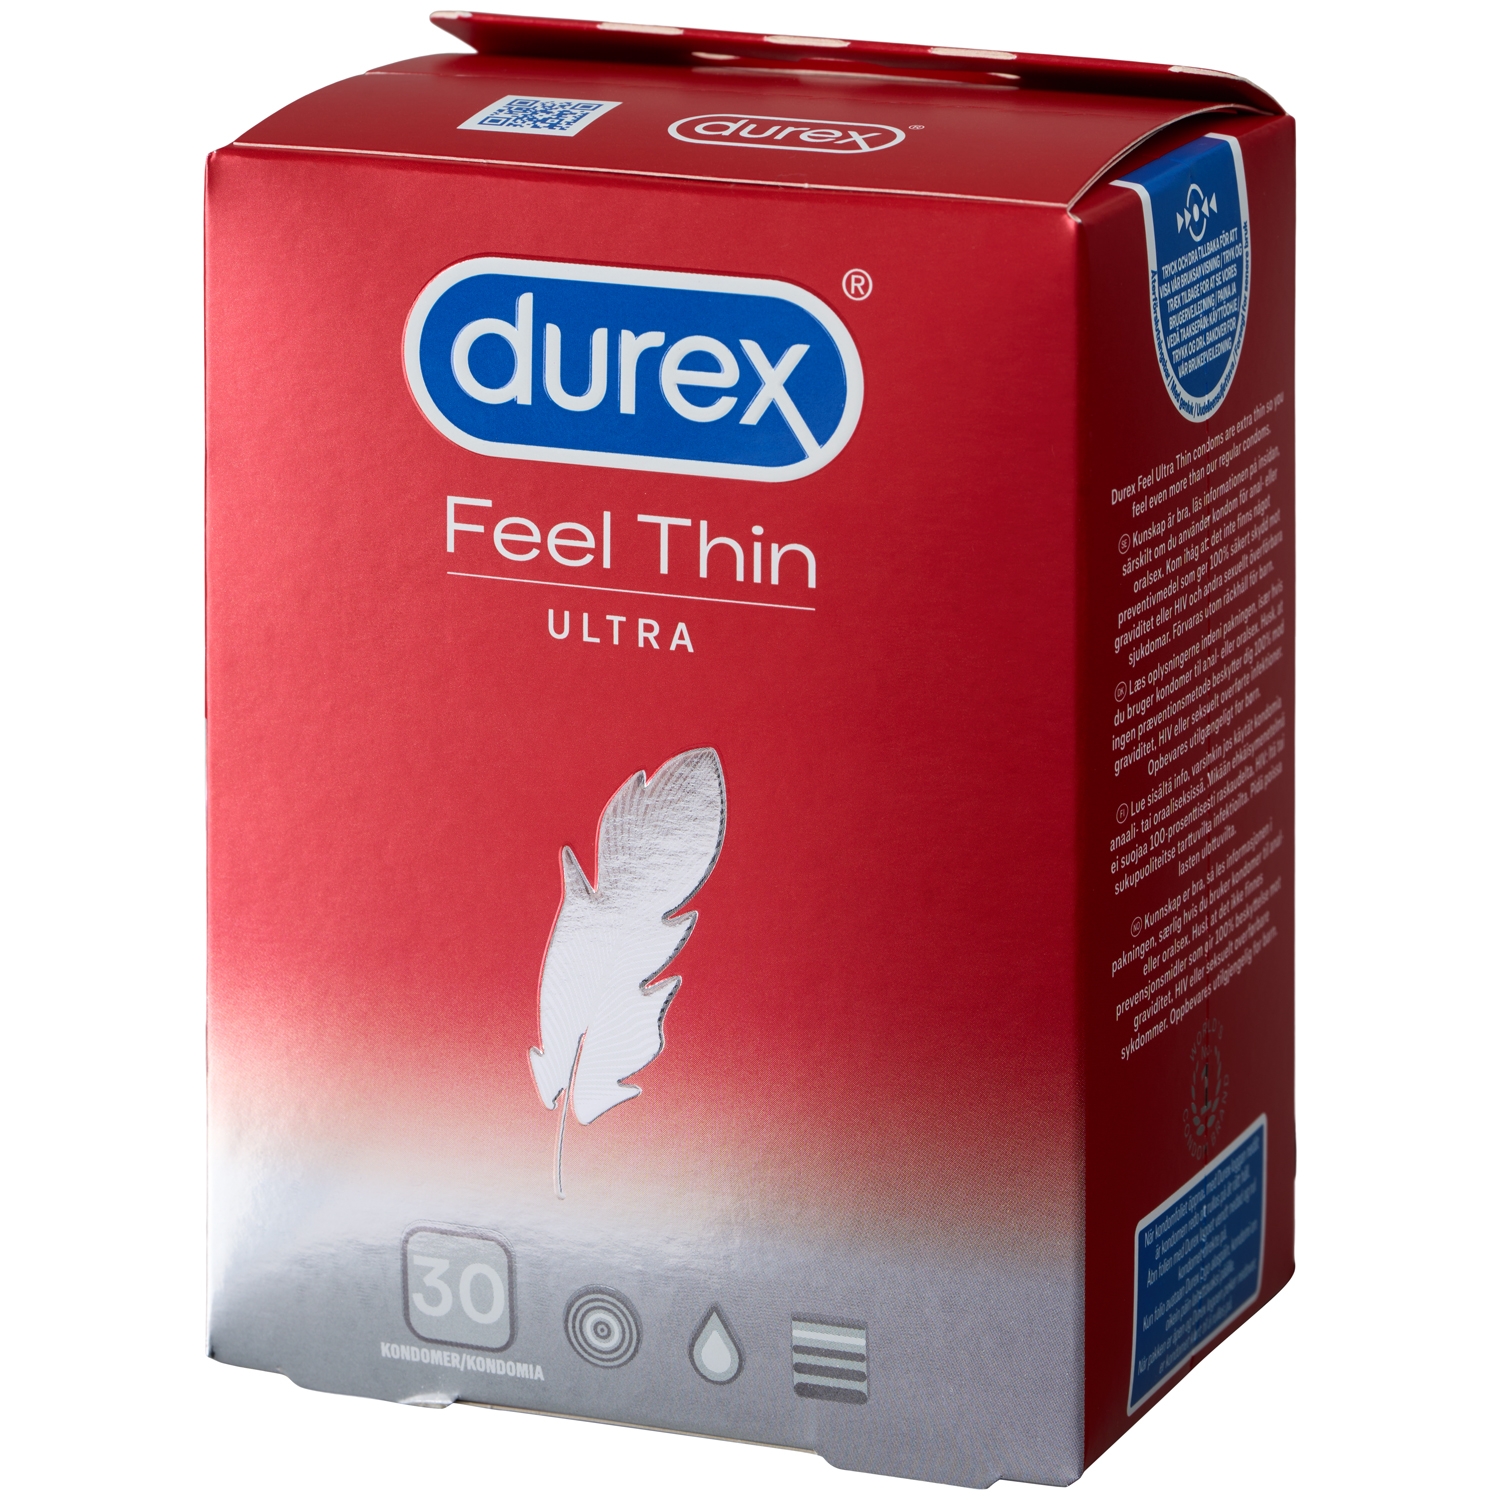 Durex Feel Thin Ultra Kondomer 30 stk    - Rød kr. 199,00,-